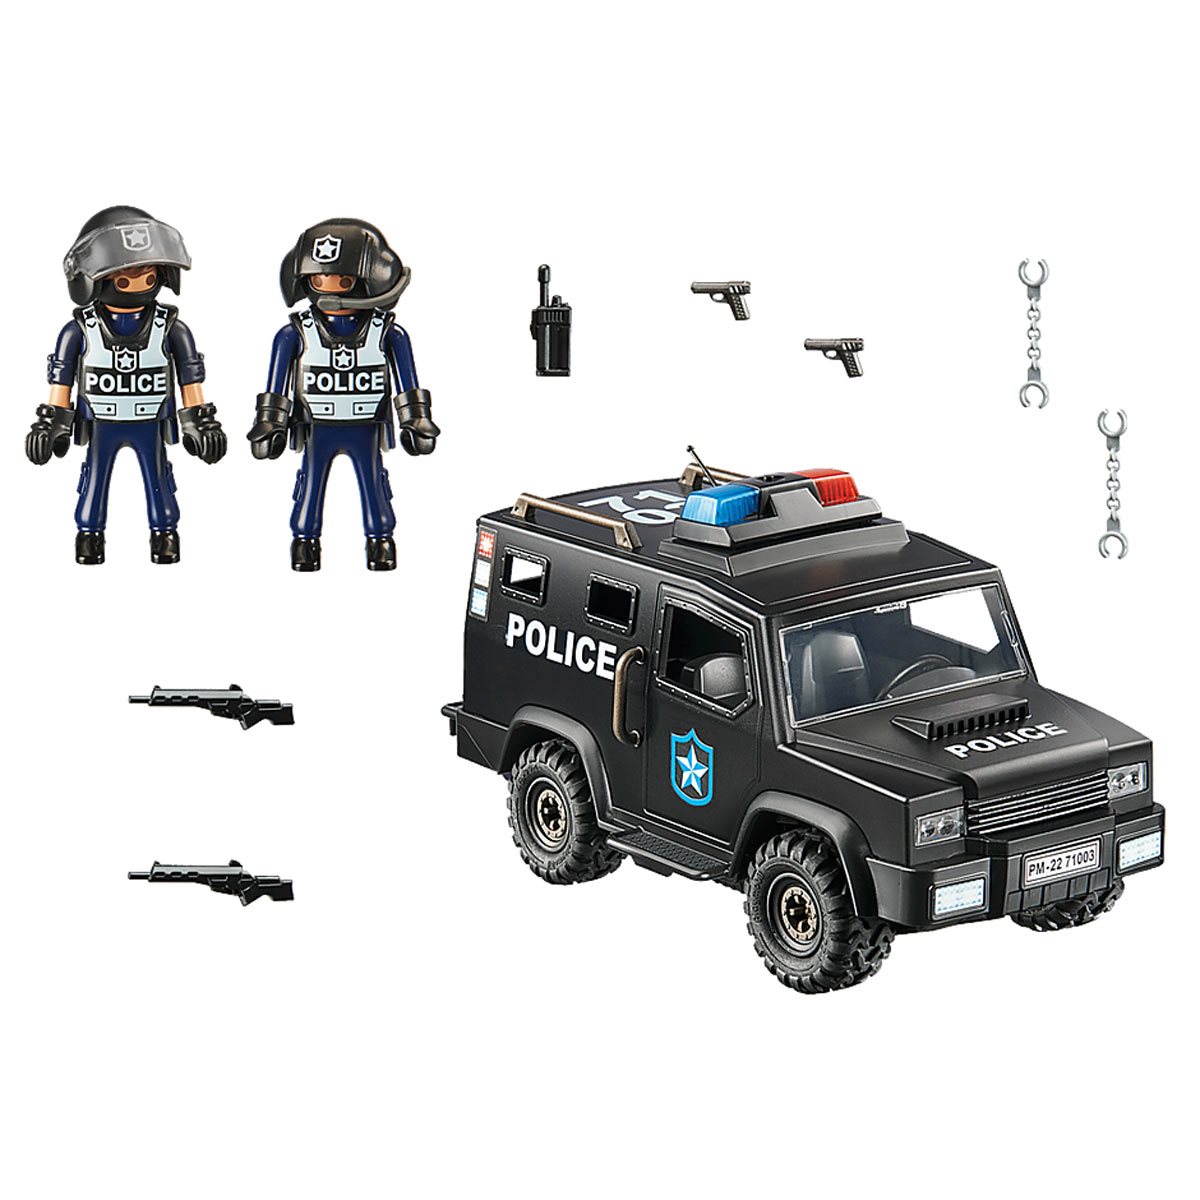 Begyndelsen Studerende FALSK Playmobil 71003 Tactical Unit Police Vehicle